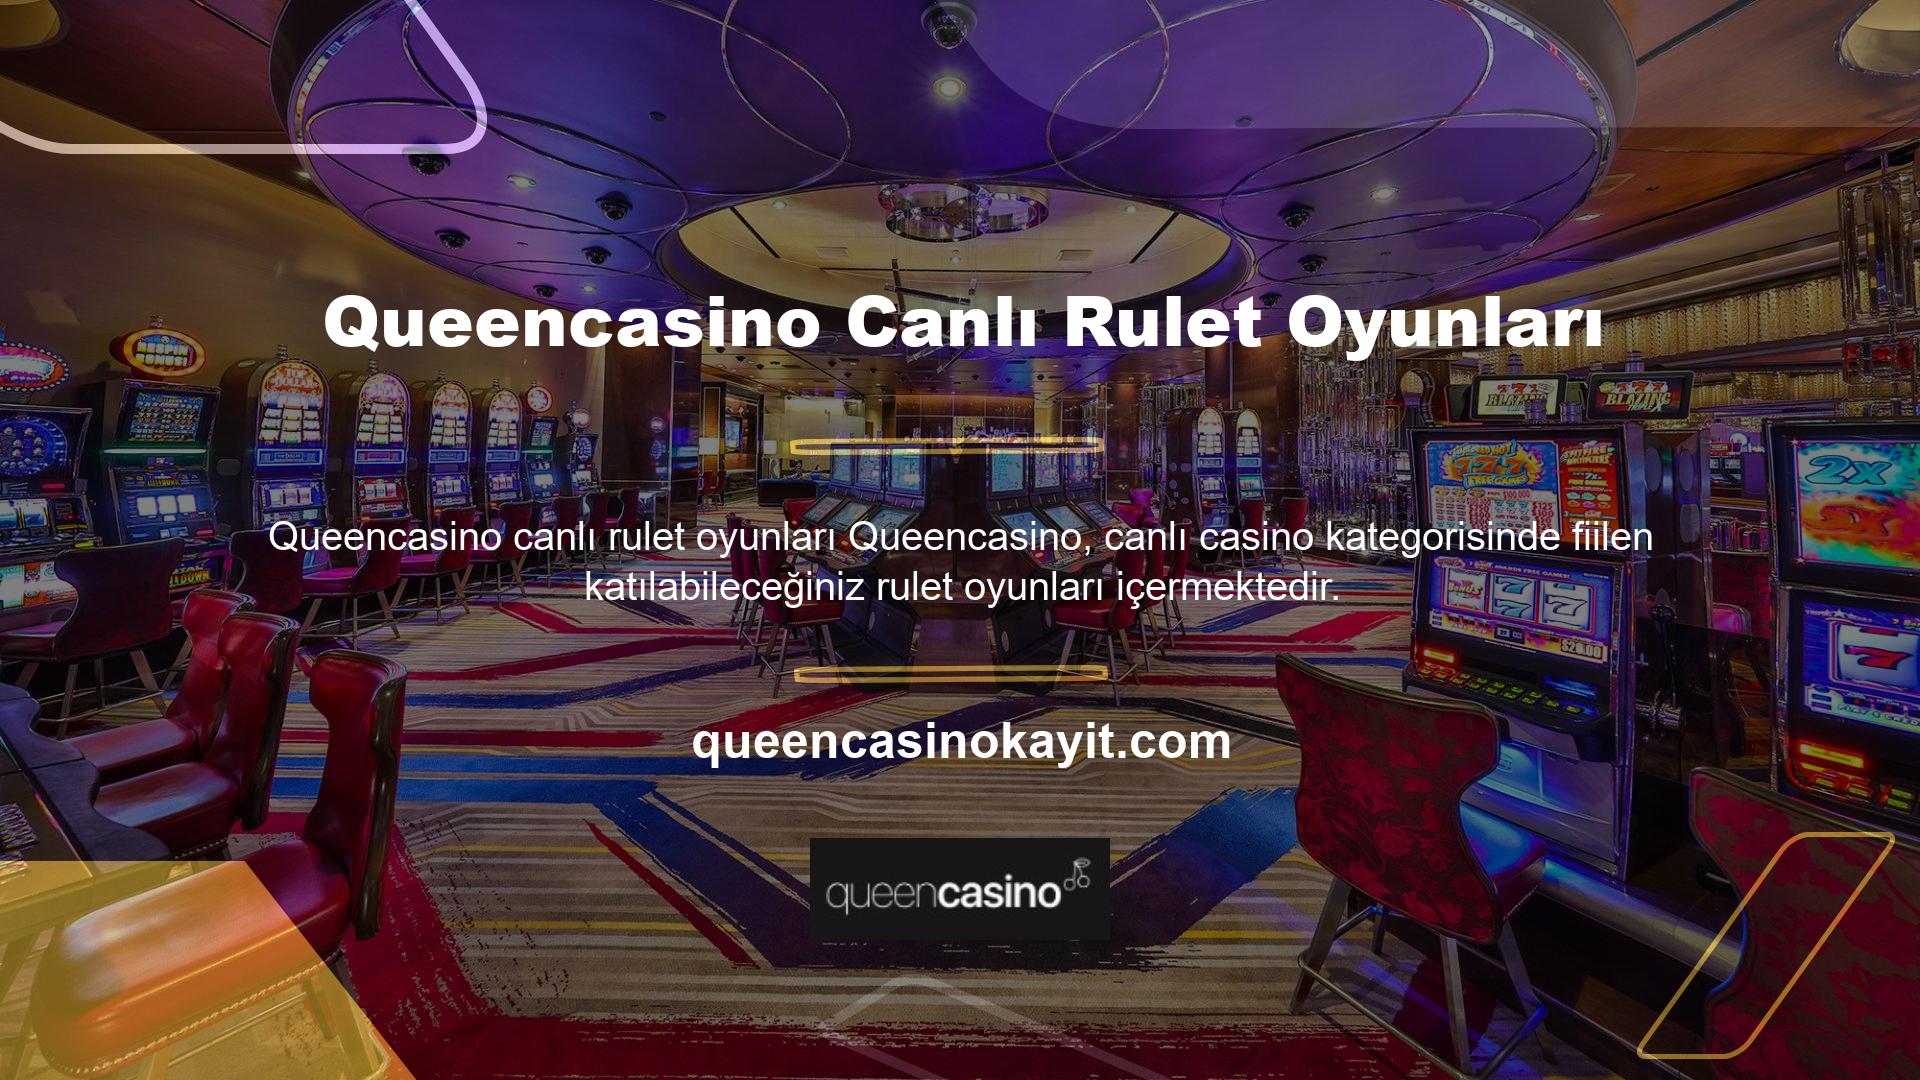 Queencasino Canlı Casino başlığına tıklarsanız, oyun seçeneklerini açmak için o kategorinin altındaki Canlı Rulet başlığına tıklayabilirsiniz